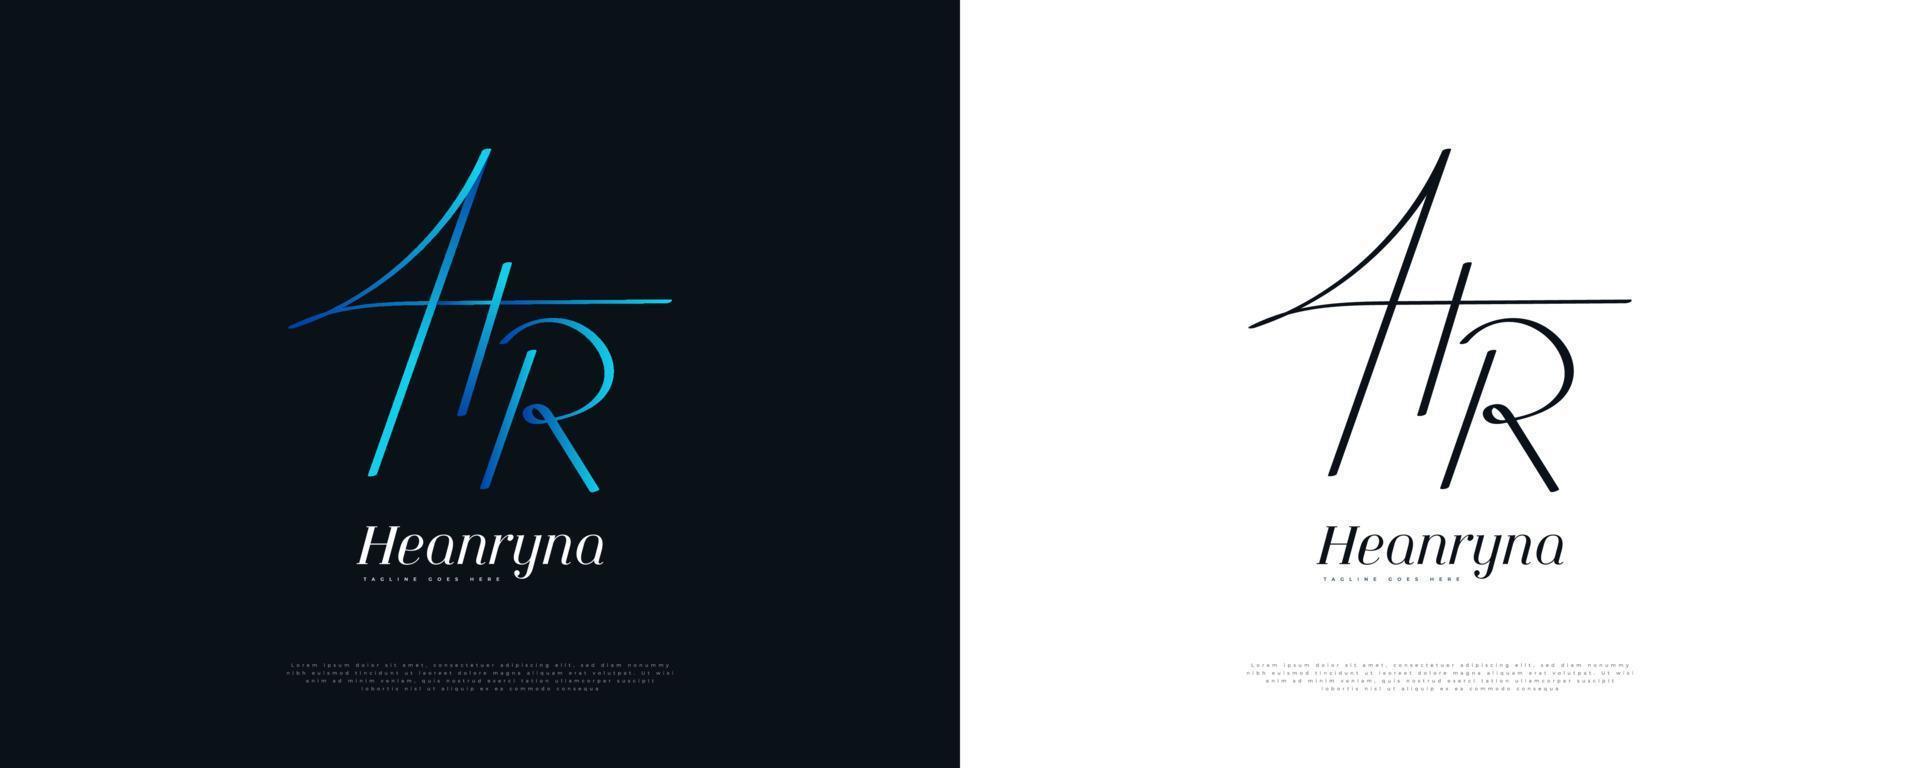 hr eerste handtekening logo-ontwerp met handschriftstijl in blauw verloop. eerste h en r-logo-ontwerp voor bruiloft, mode, sieraden, boetiek en zakelijke merkidentiteit vector